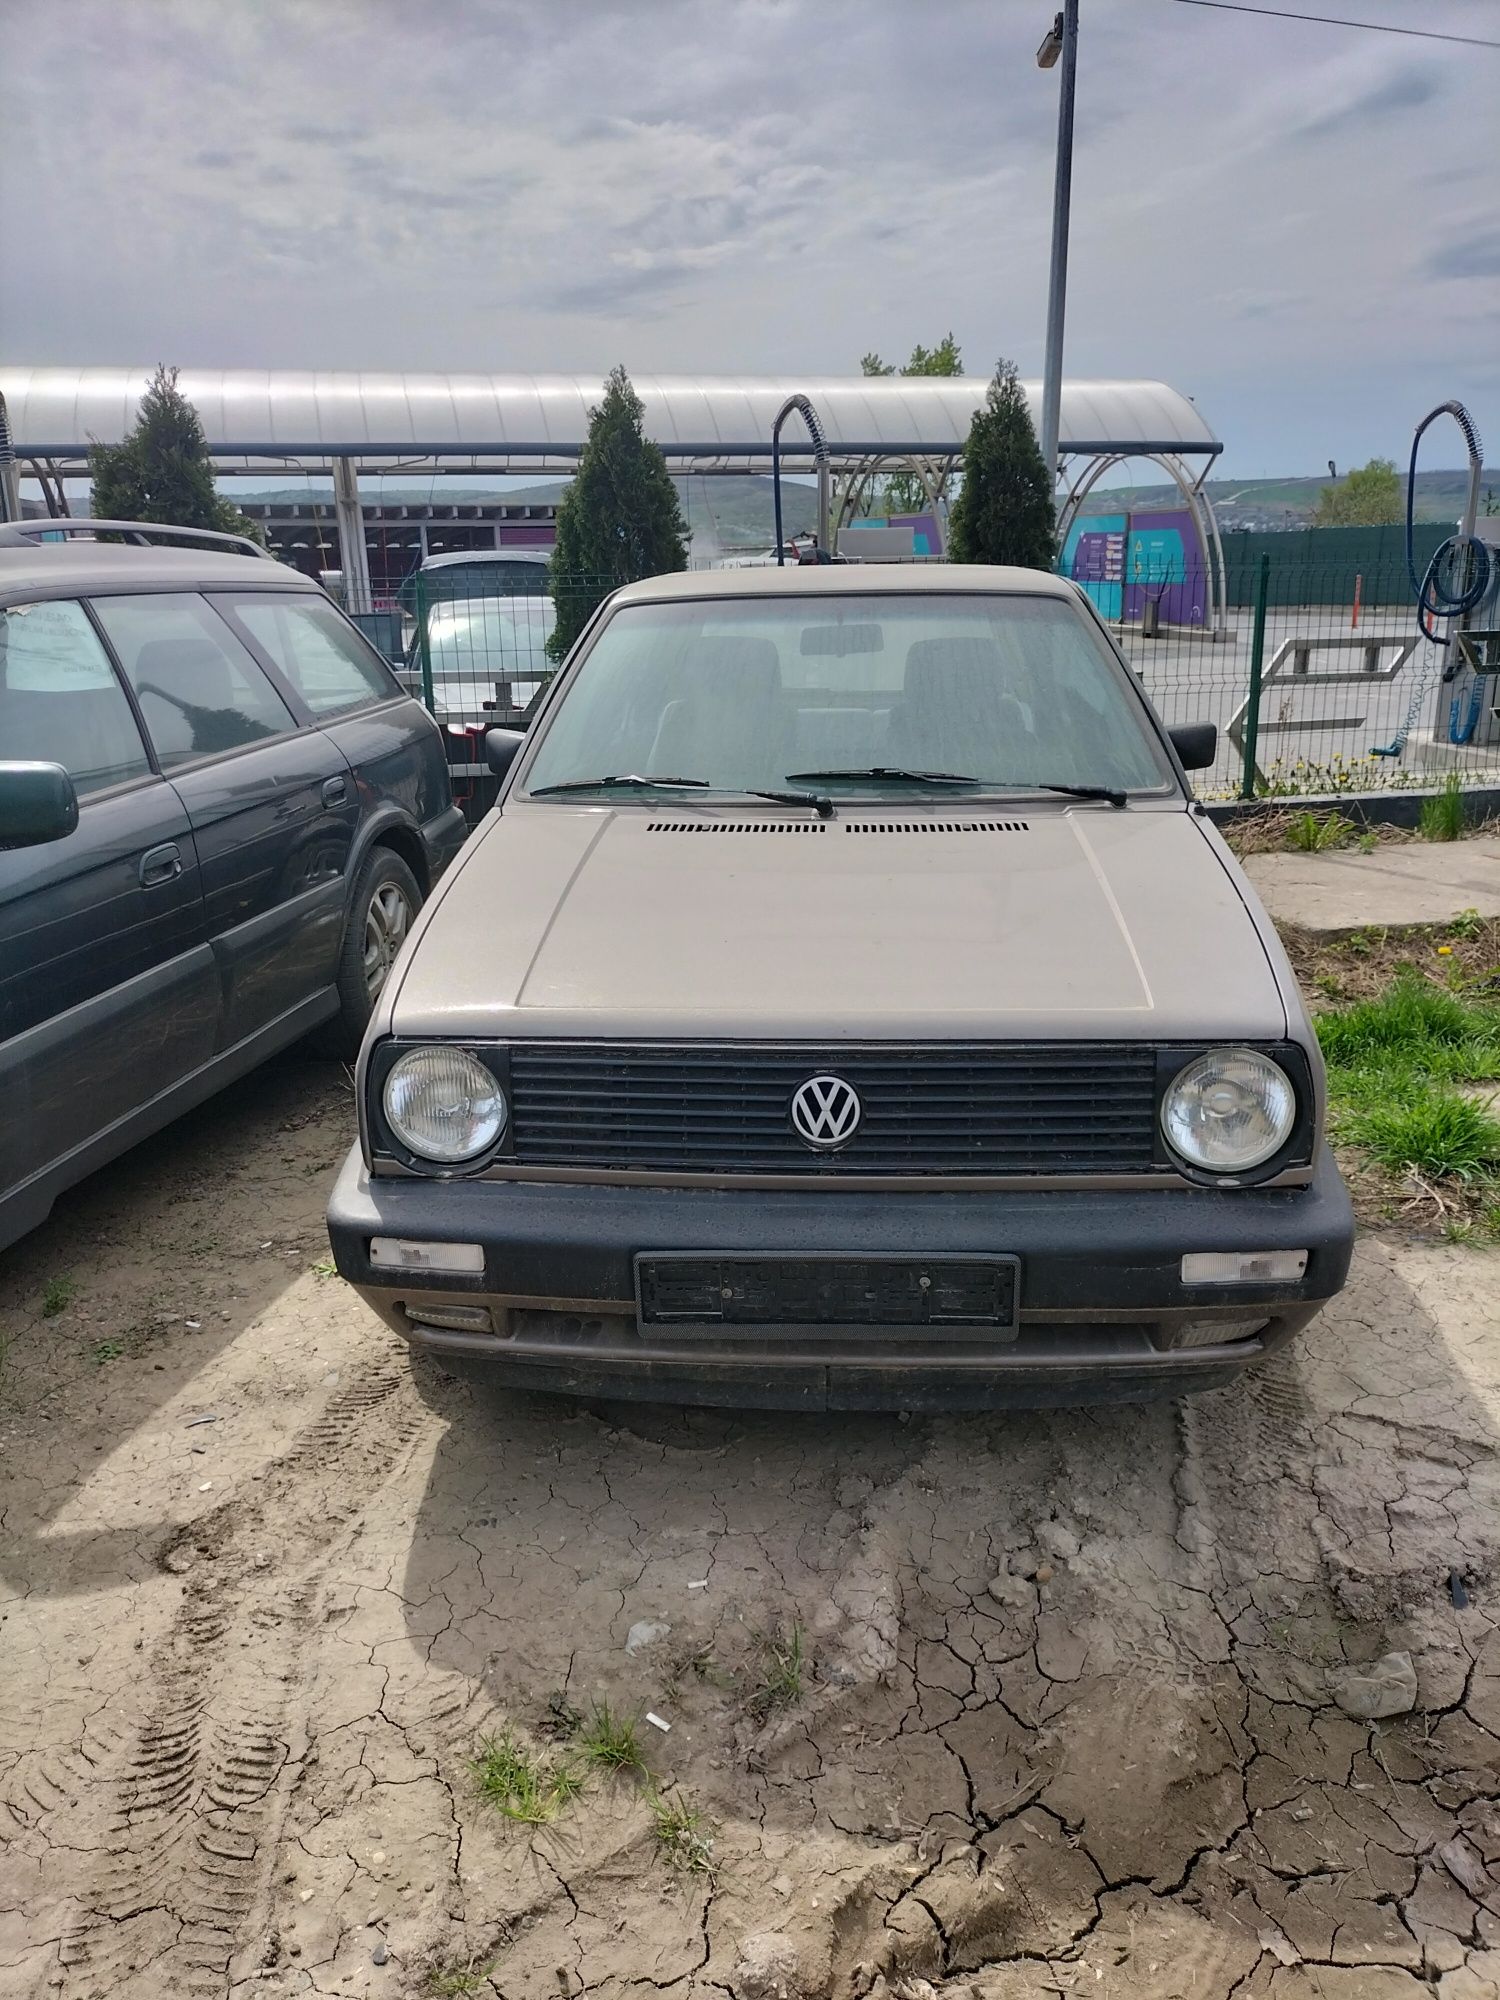 VW Golf 2 '86, fără rugină, cumpărat de la Austriac de 98ani din garaj